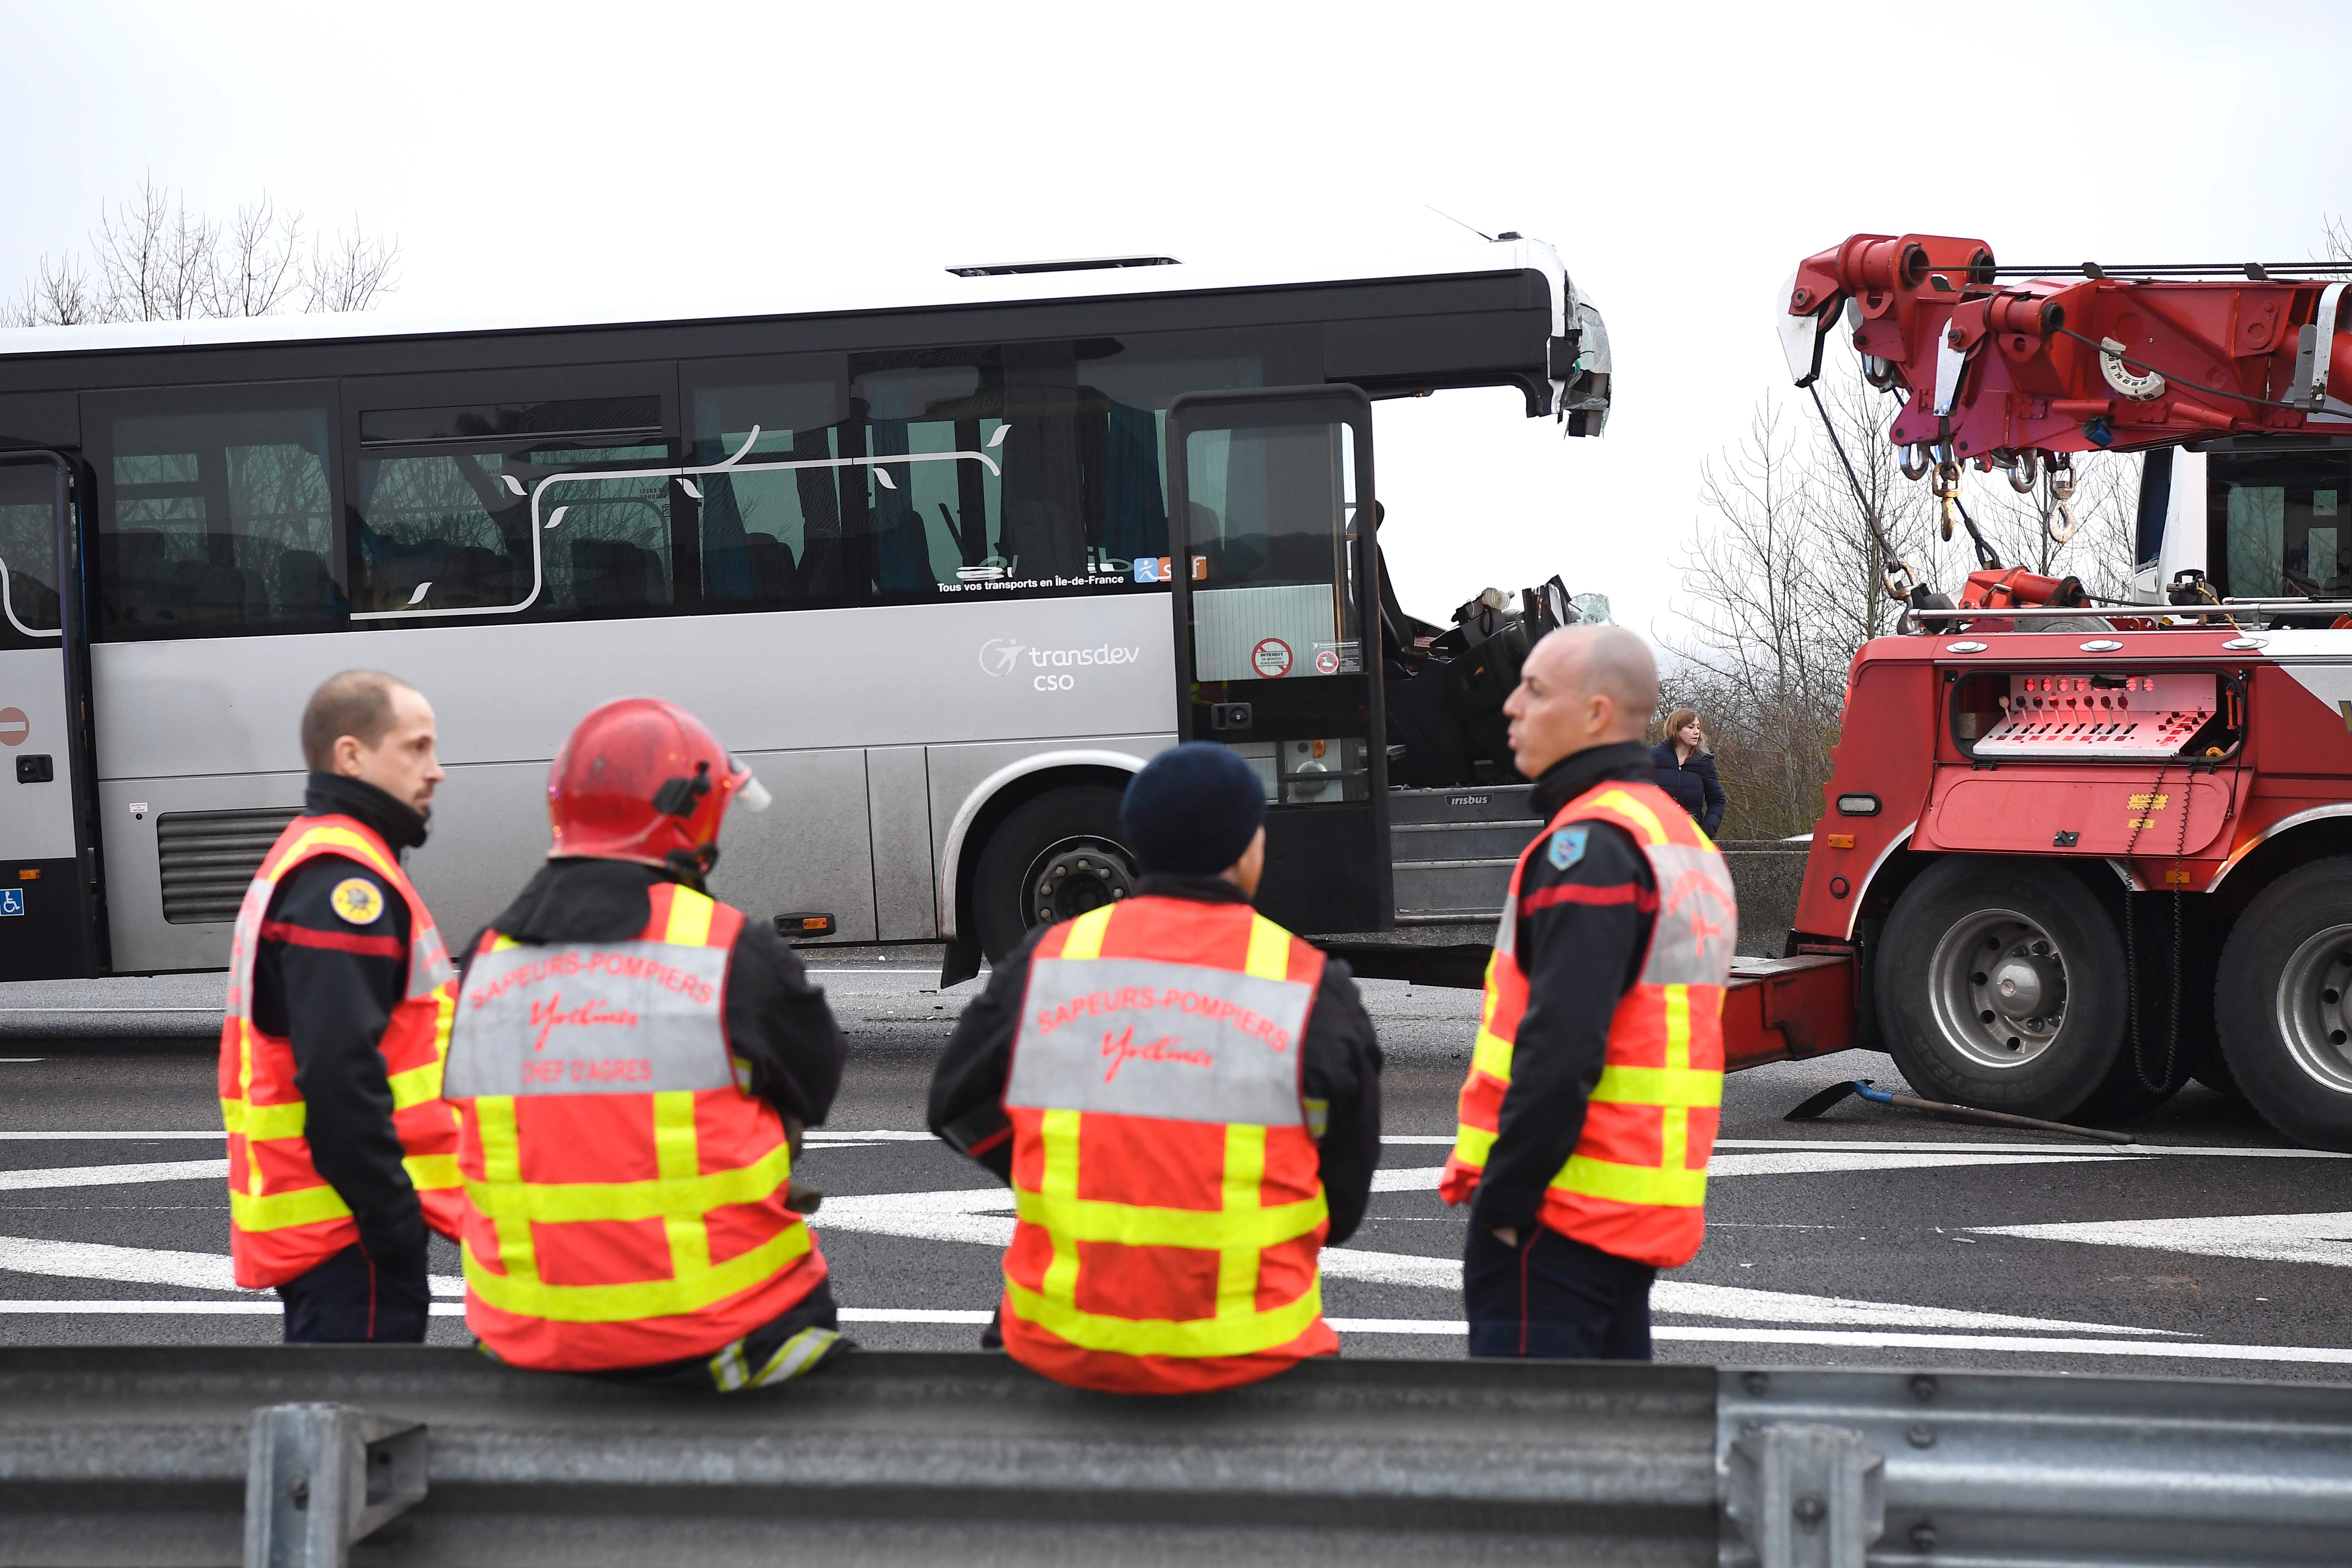 رجال الإنقاذ يرفعون السيارات المتحطمة عن الطريق لتسيير حركة المرور جنوب غرب باريس